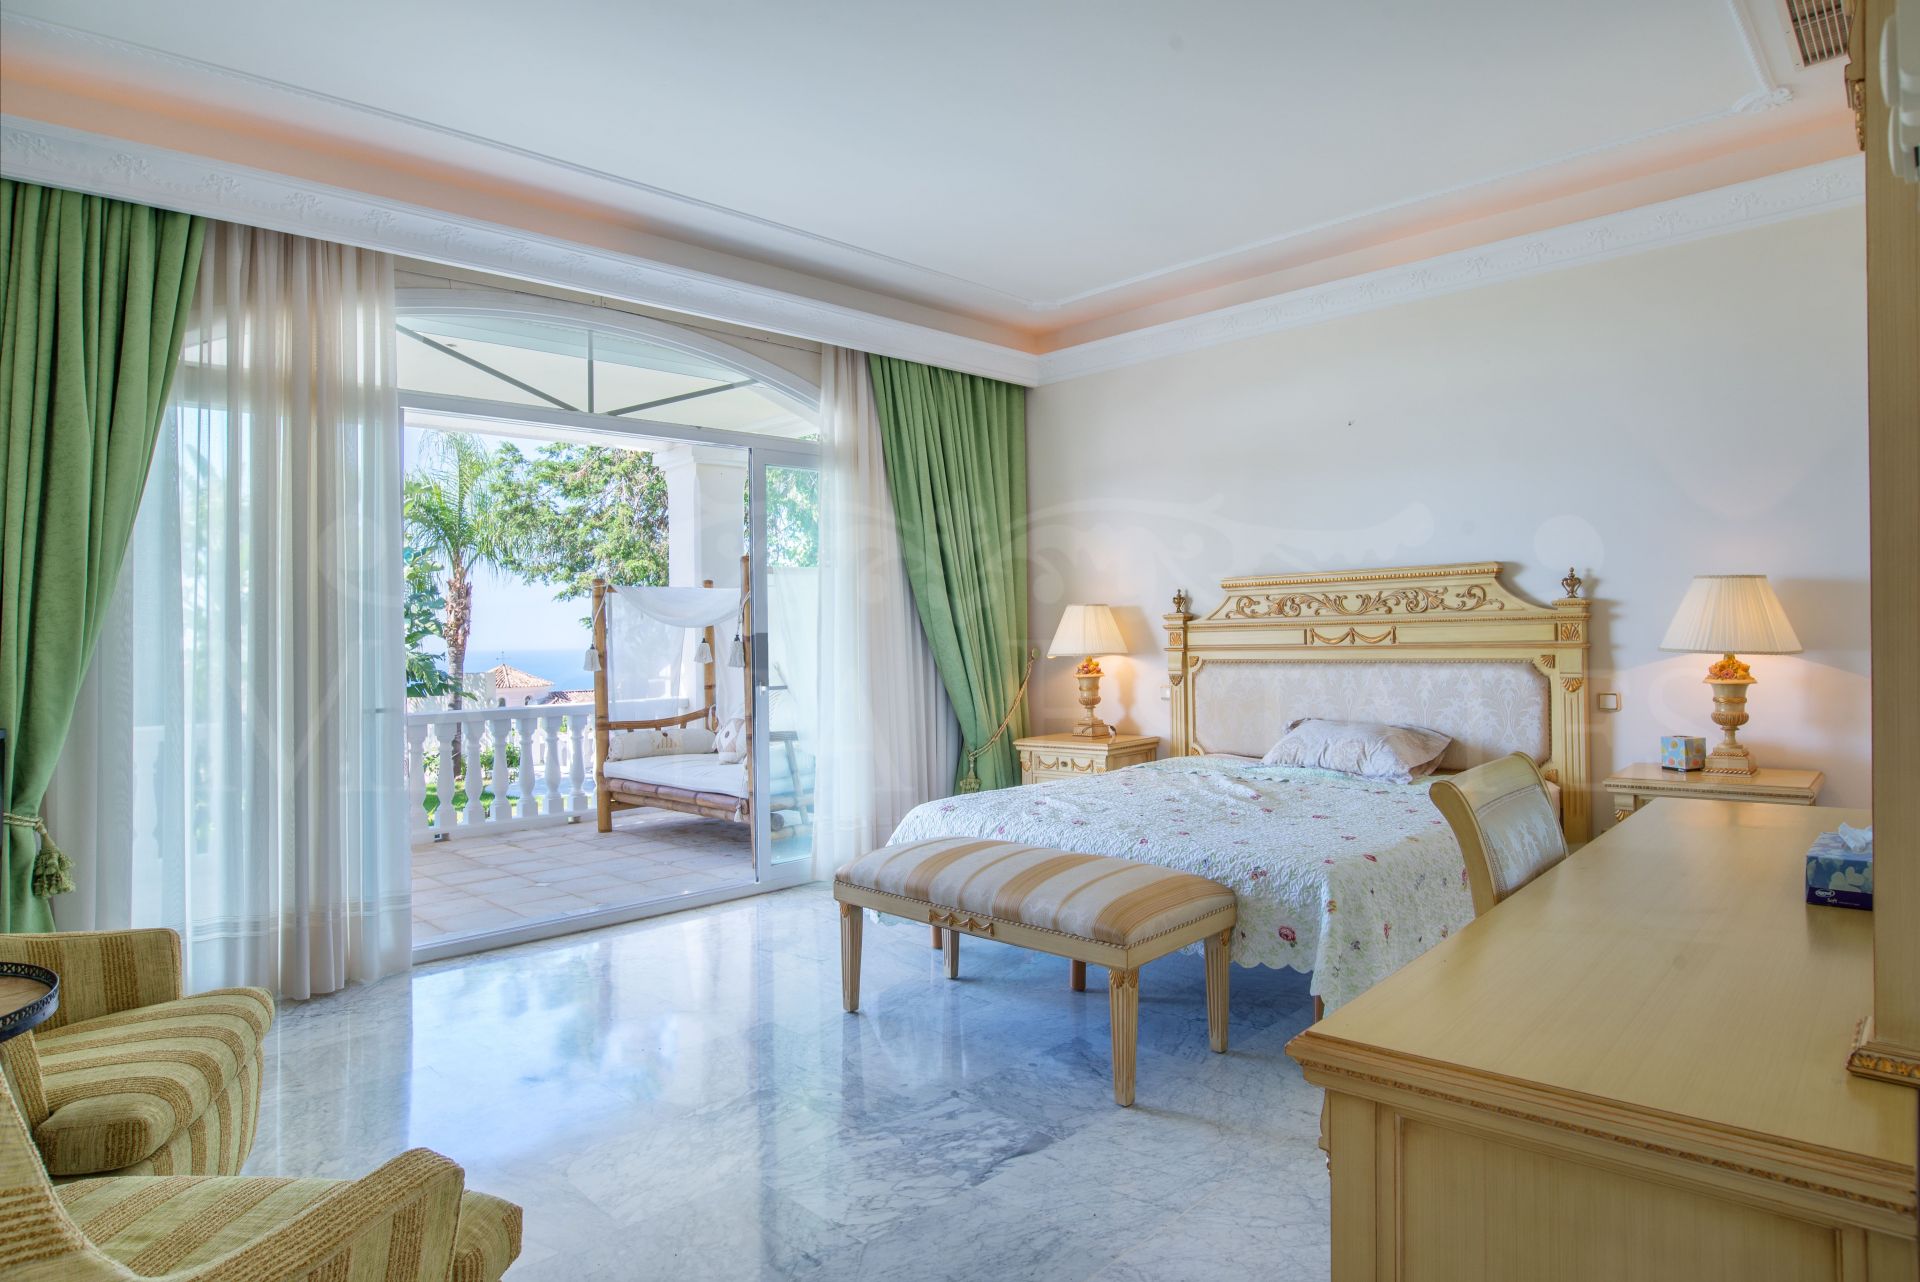 Excepcional oportunidad de inversión en esta villa en Sierra Blanca, Marbella